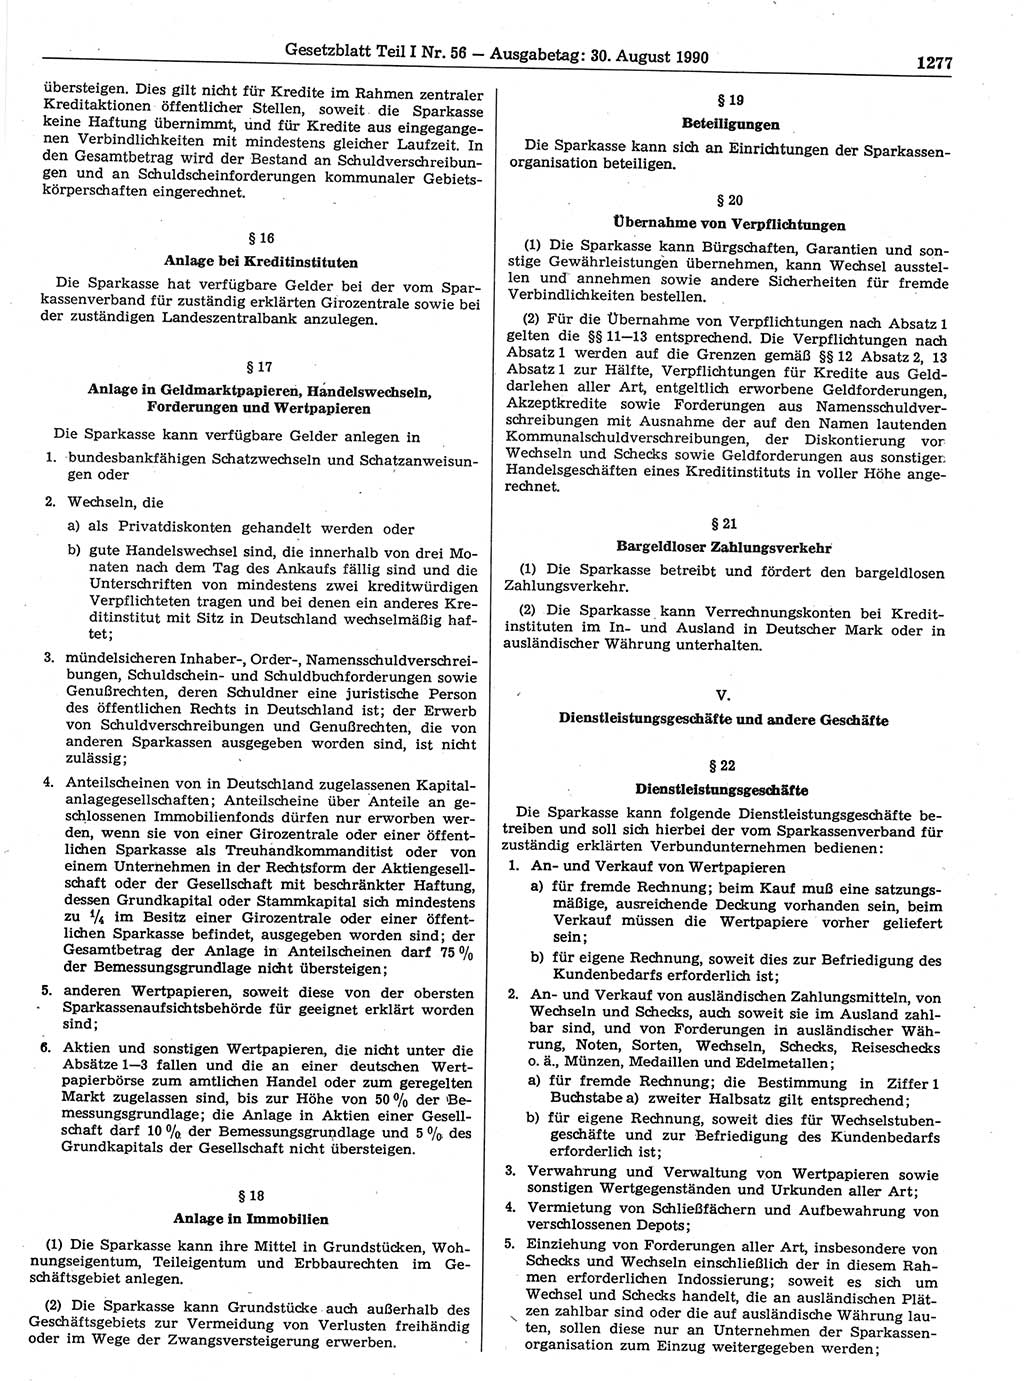 Gesetzblatt (GBl.) der Deutschen Demokratischen Republik (DDR) Teil Ⅰ 1990, Seite 1277 (GBl. DDR Ⅰ 1990, S. 1277)